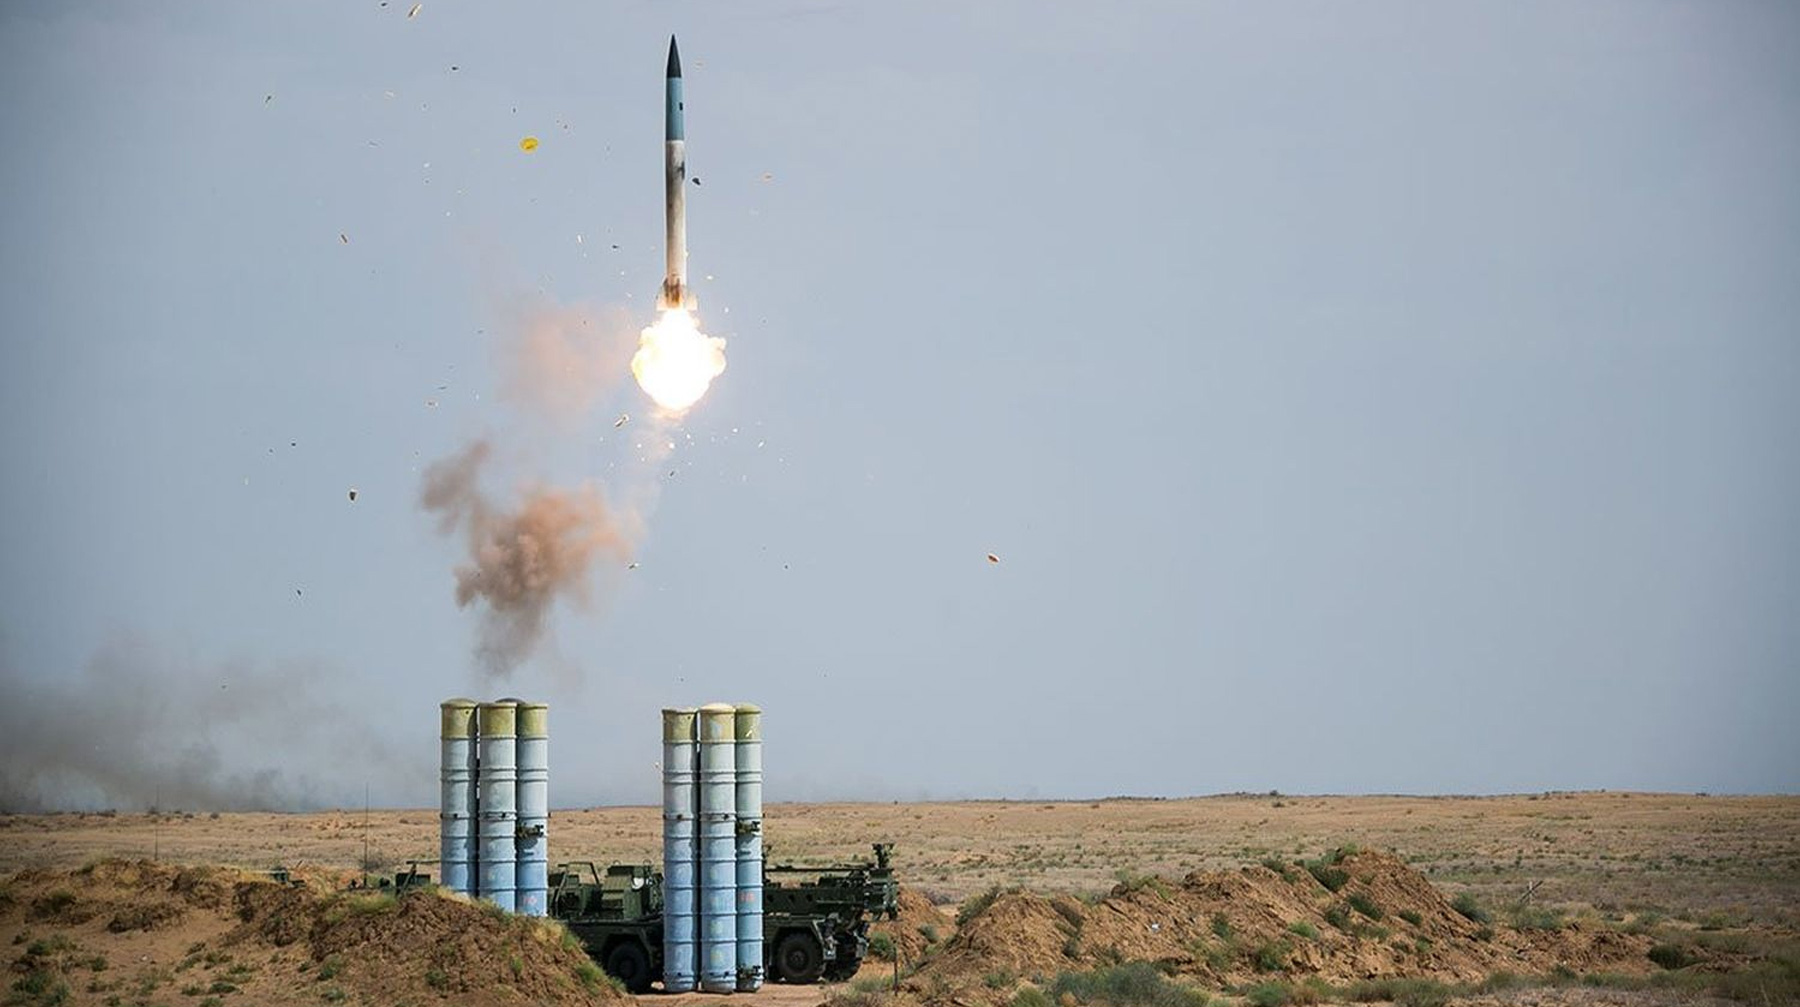 Предприятия ОПК в РФ только приступили к изготовлению оружия, отметил глава «Ростеха» Зенитный ракетный комплекс С-400